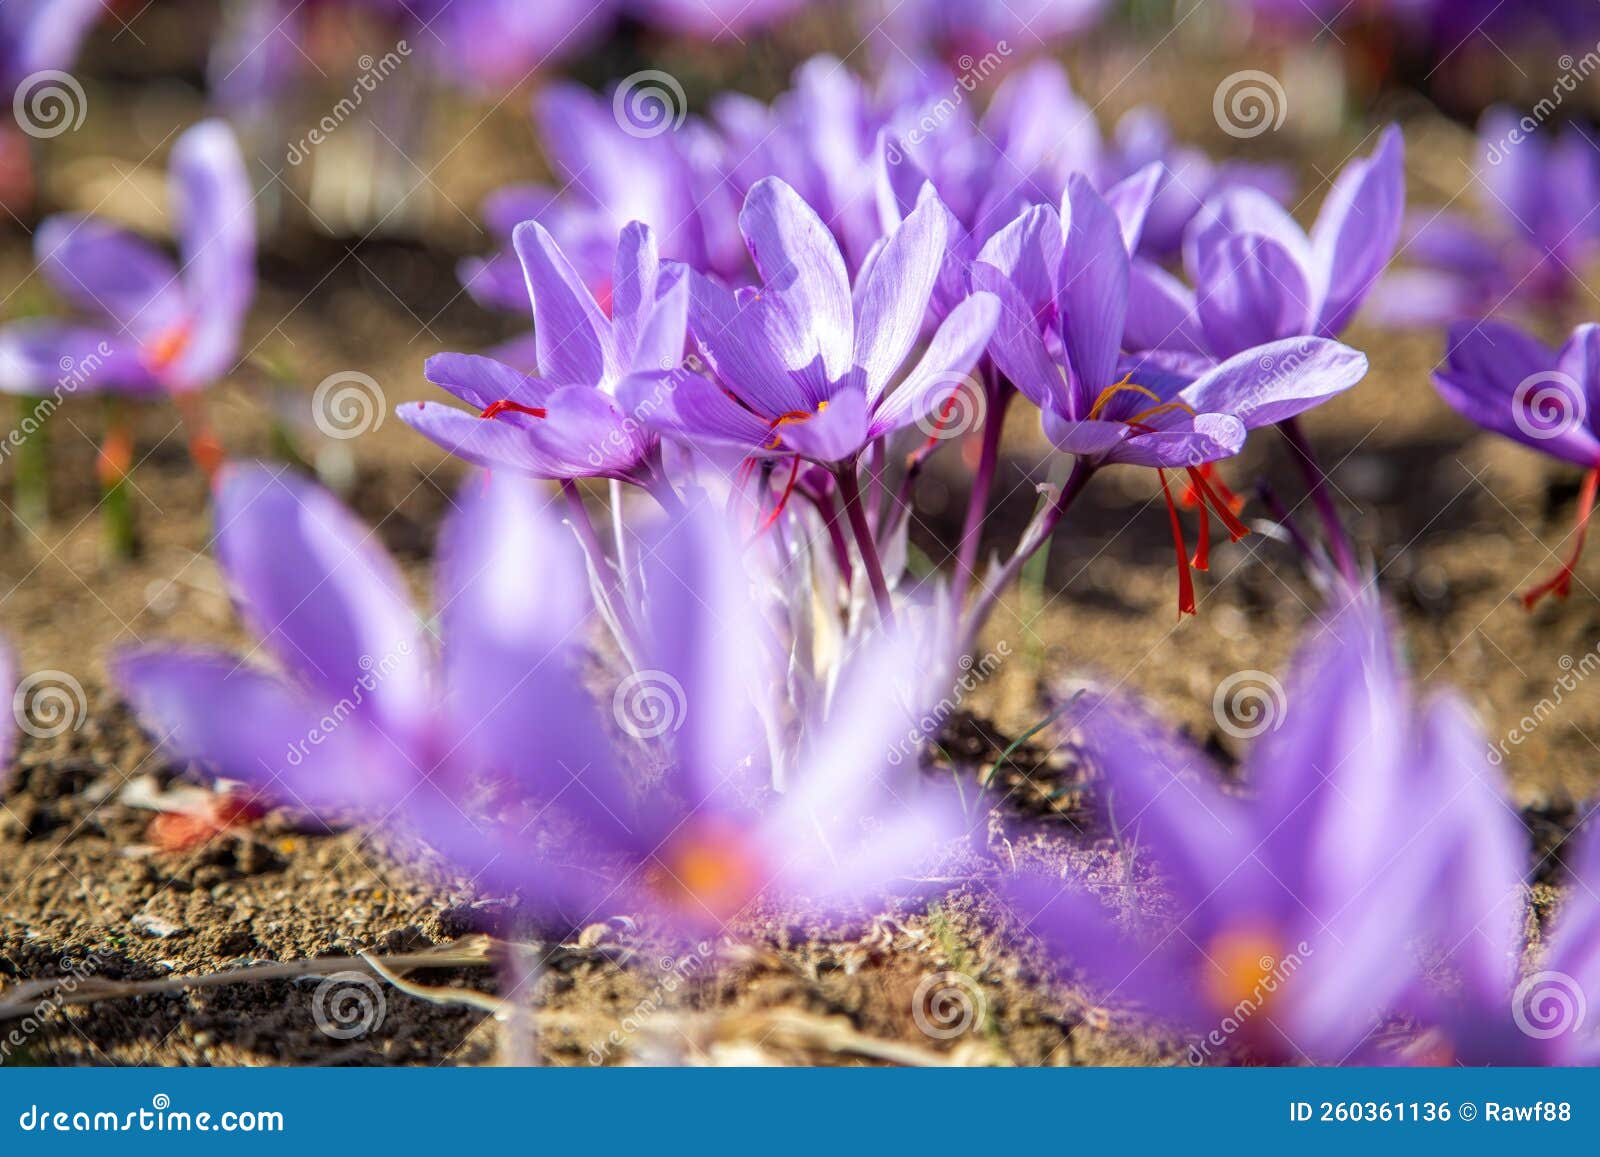 Saffron Flower on Ground, Crocus Purple Blooming Field, Harvest ...